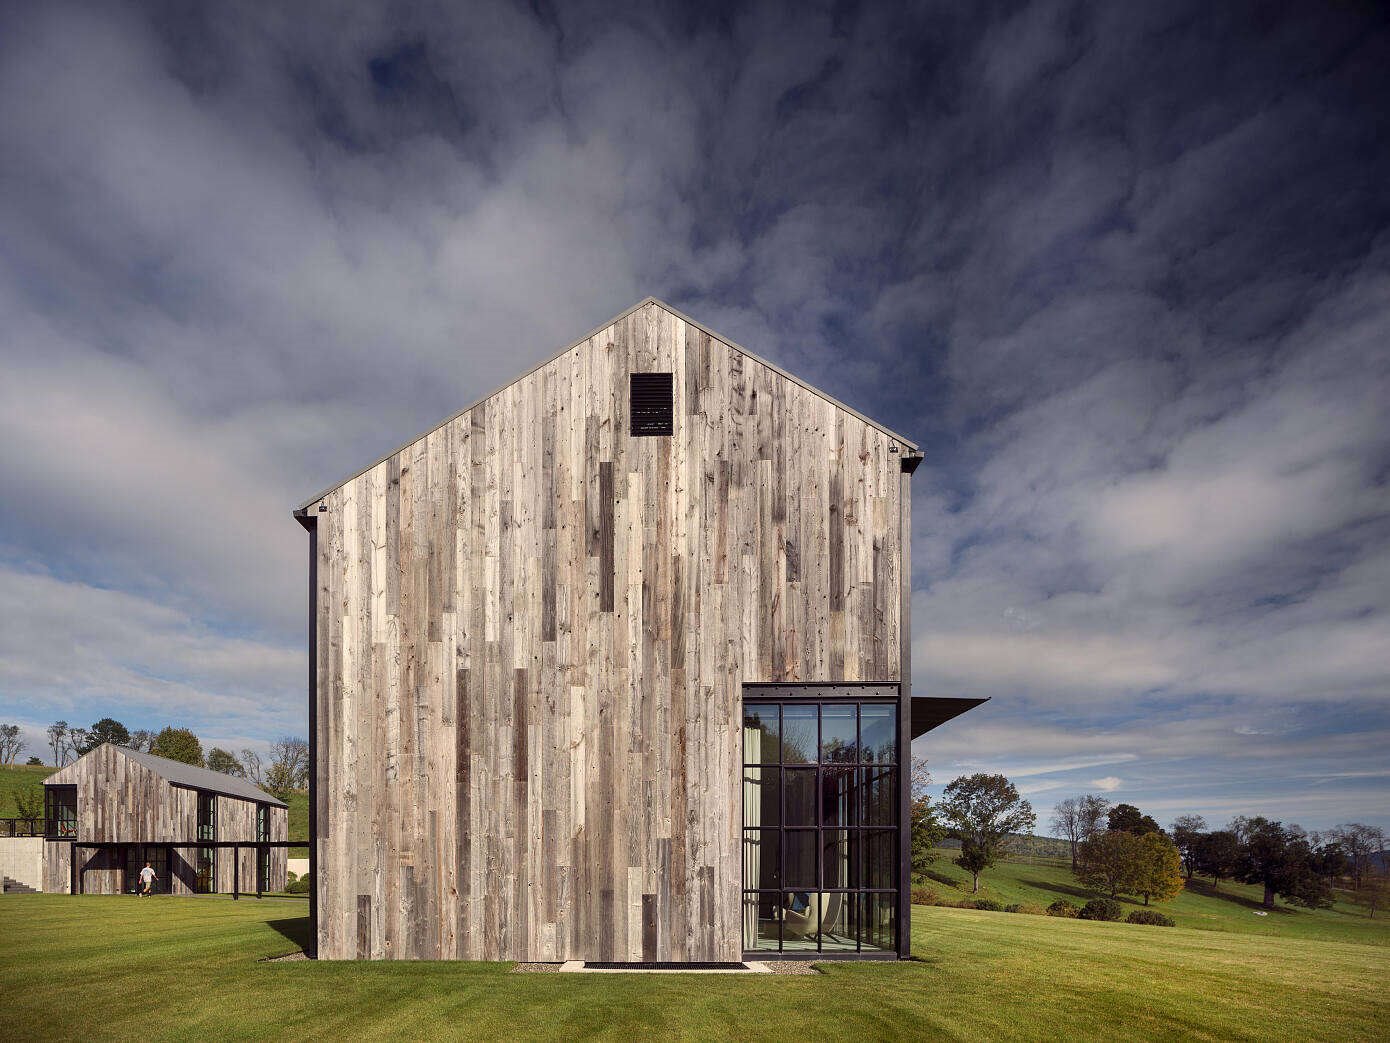 Casa de madera en mitad de la naturaleza hecha por Olson Kundig architects fachada